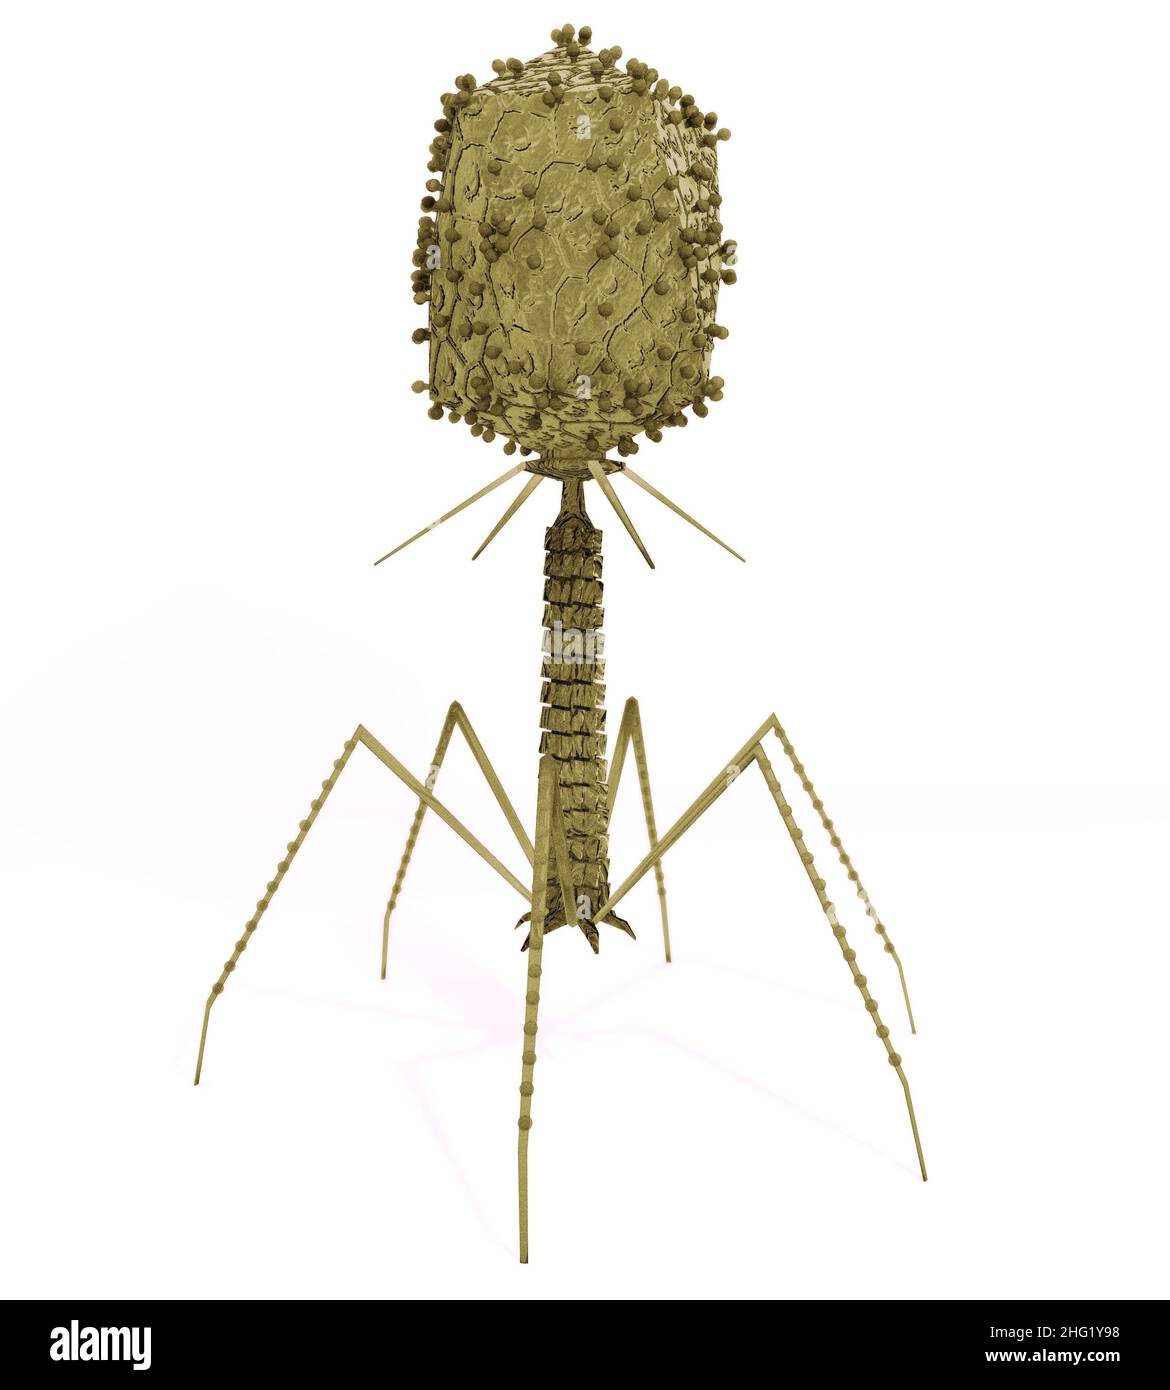 Eine genaue Illustration von Bakteriophagen-Viren, die Bakterien infizieren. Stockfoto